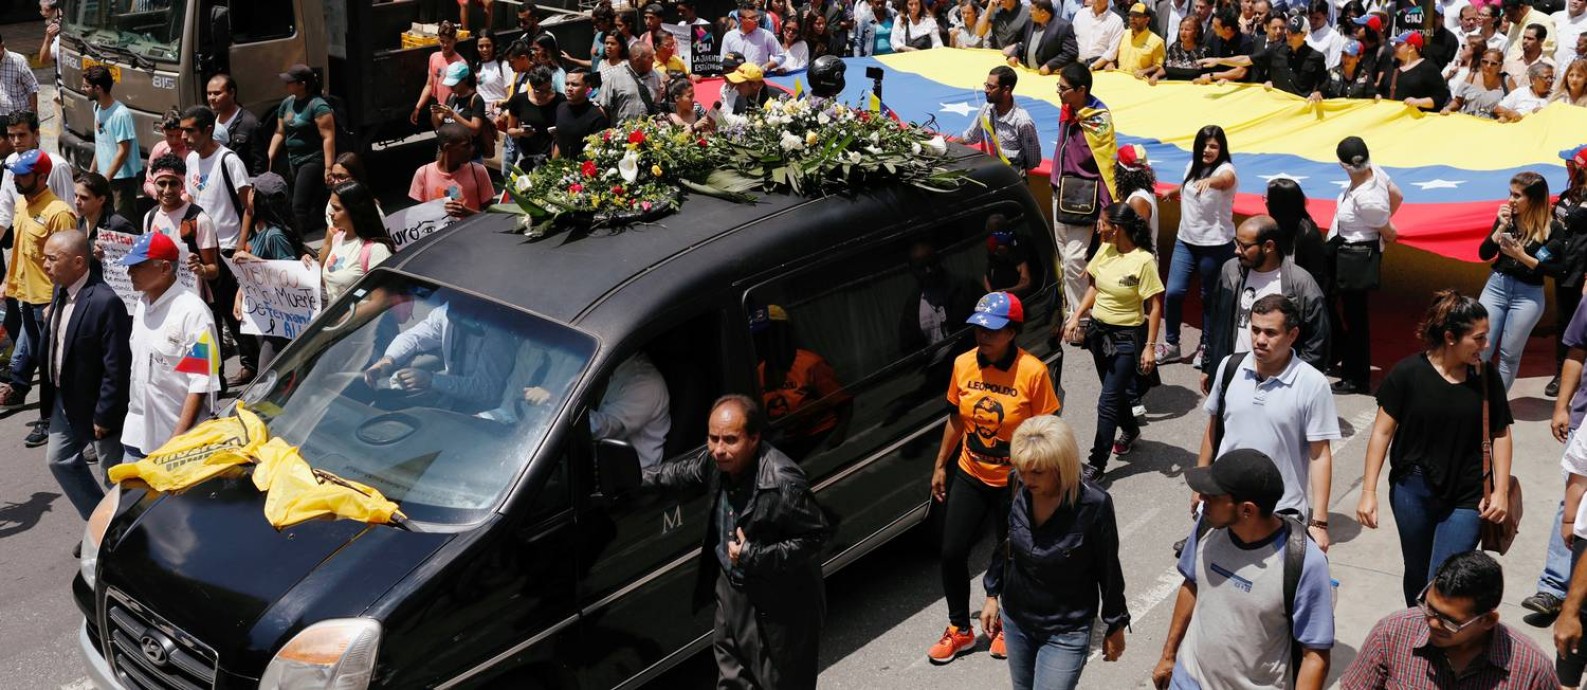 Multidão acompanha o féretro do vereador Fernando Albán em Caracas Foto: MARCO BELLO / REUTERS